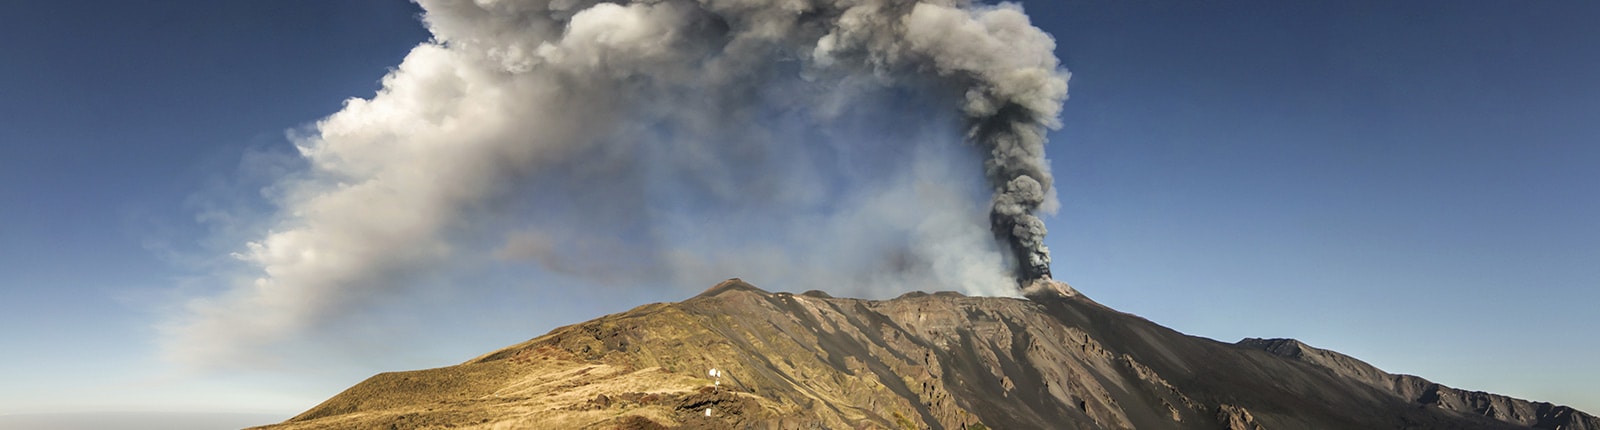 Active volcano Mt. Etna near Messina, Italy